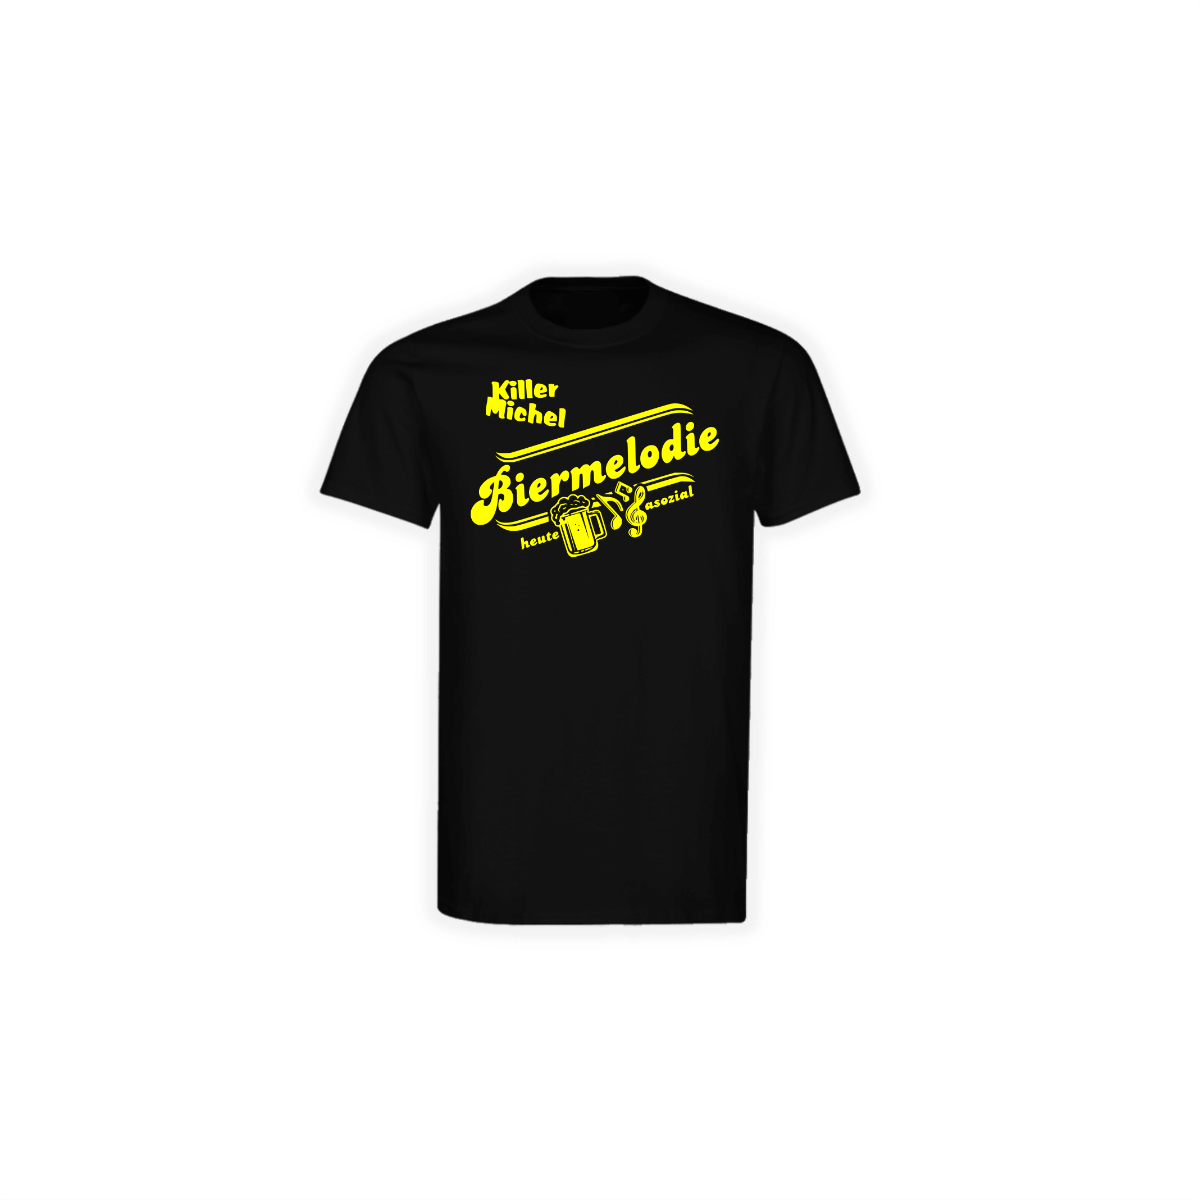 T-Shirt "BIERMELODIE" schwarz, gelber Druck